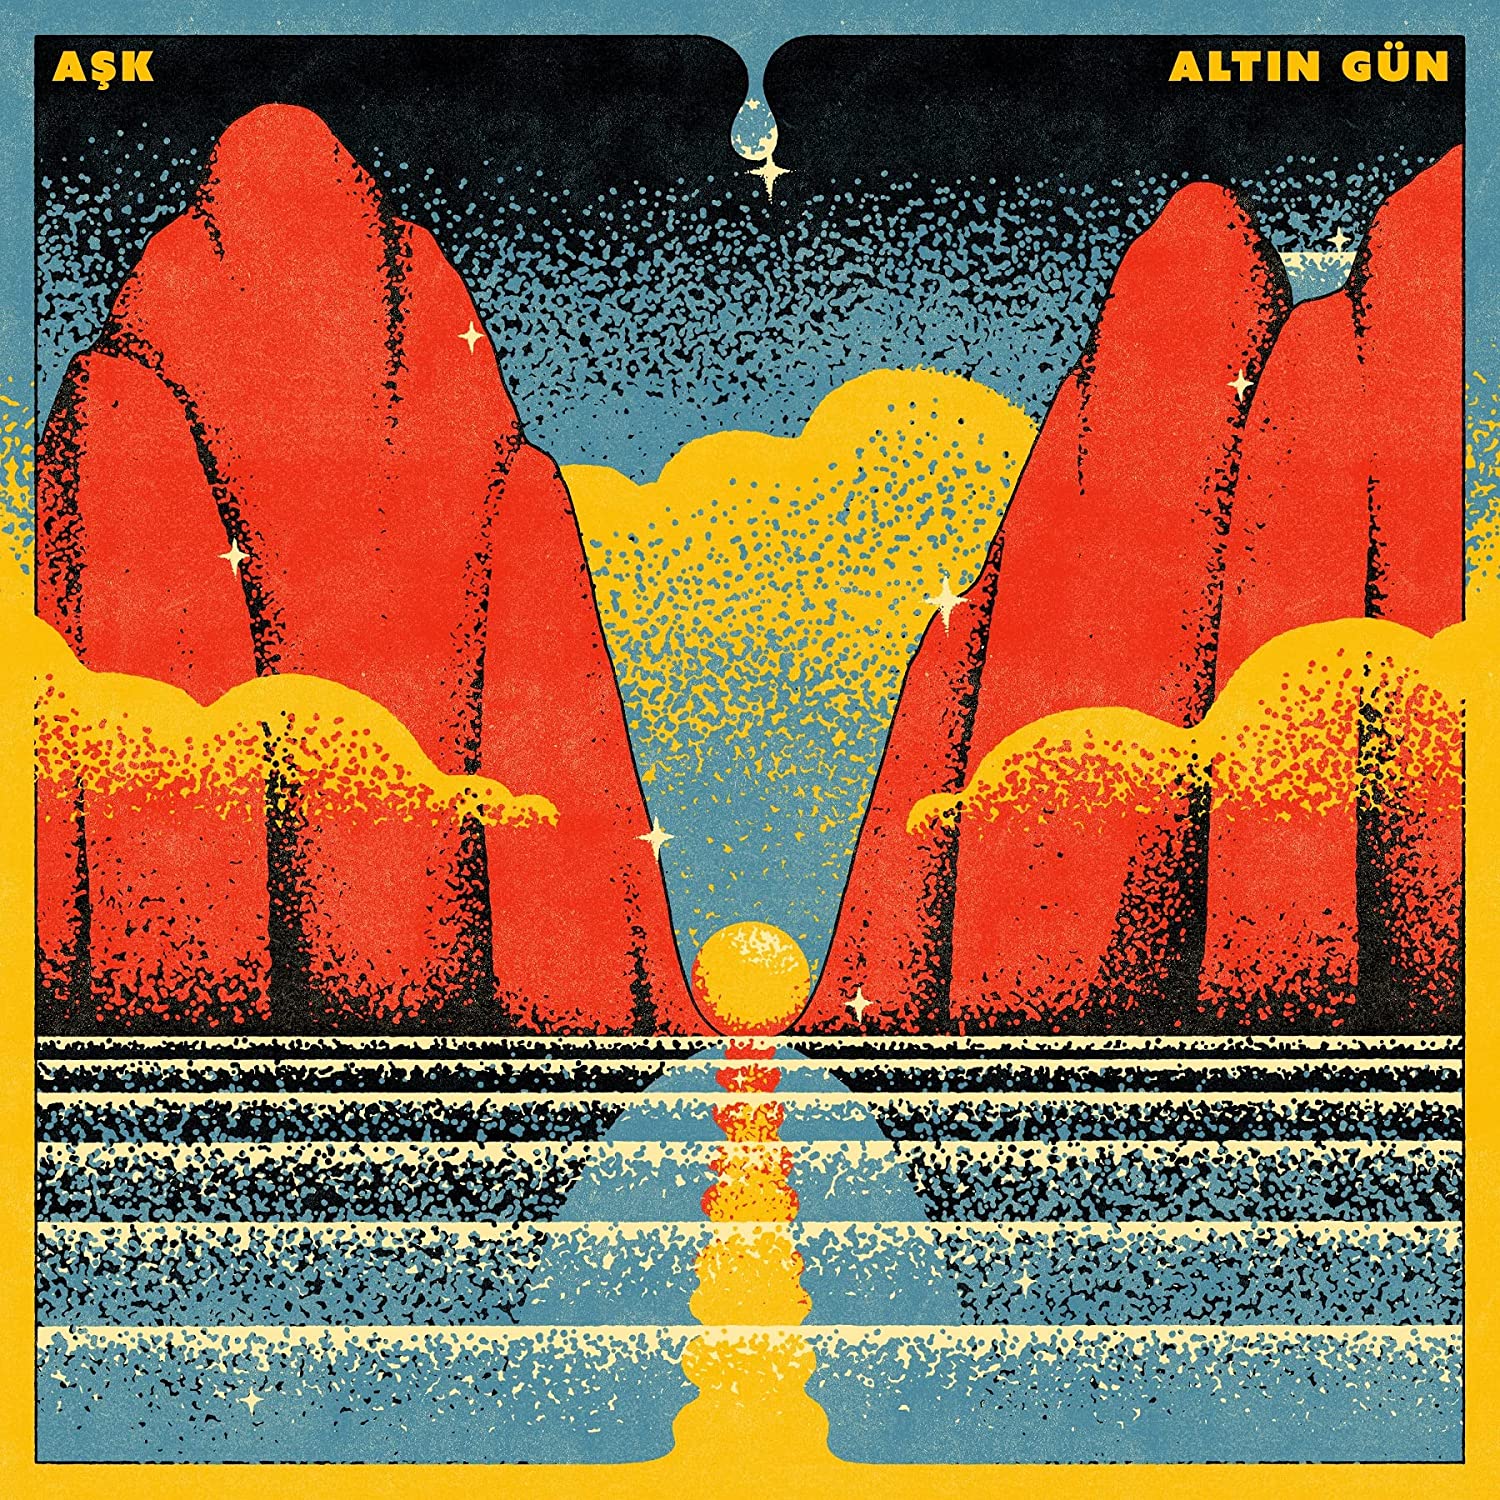 Altin Gun nuovo album e tour - immagini